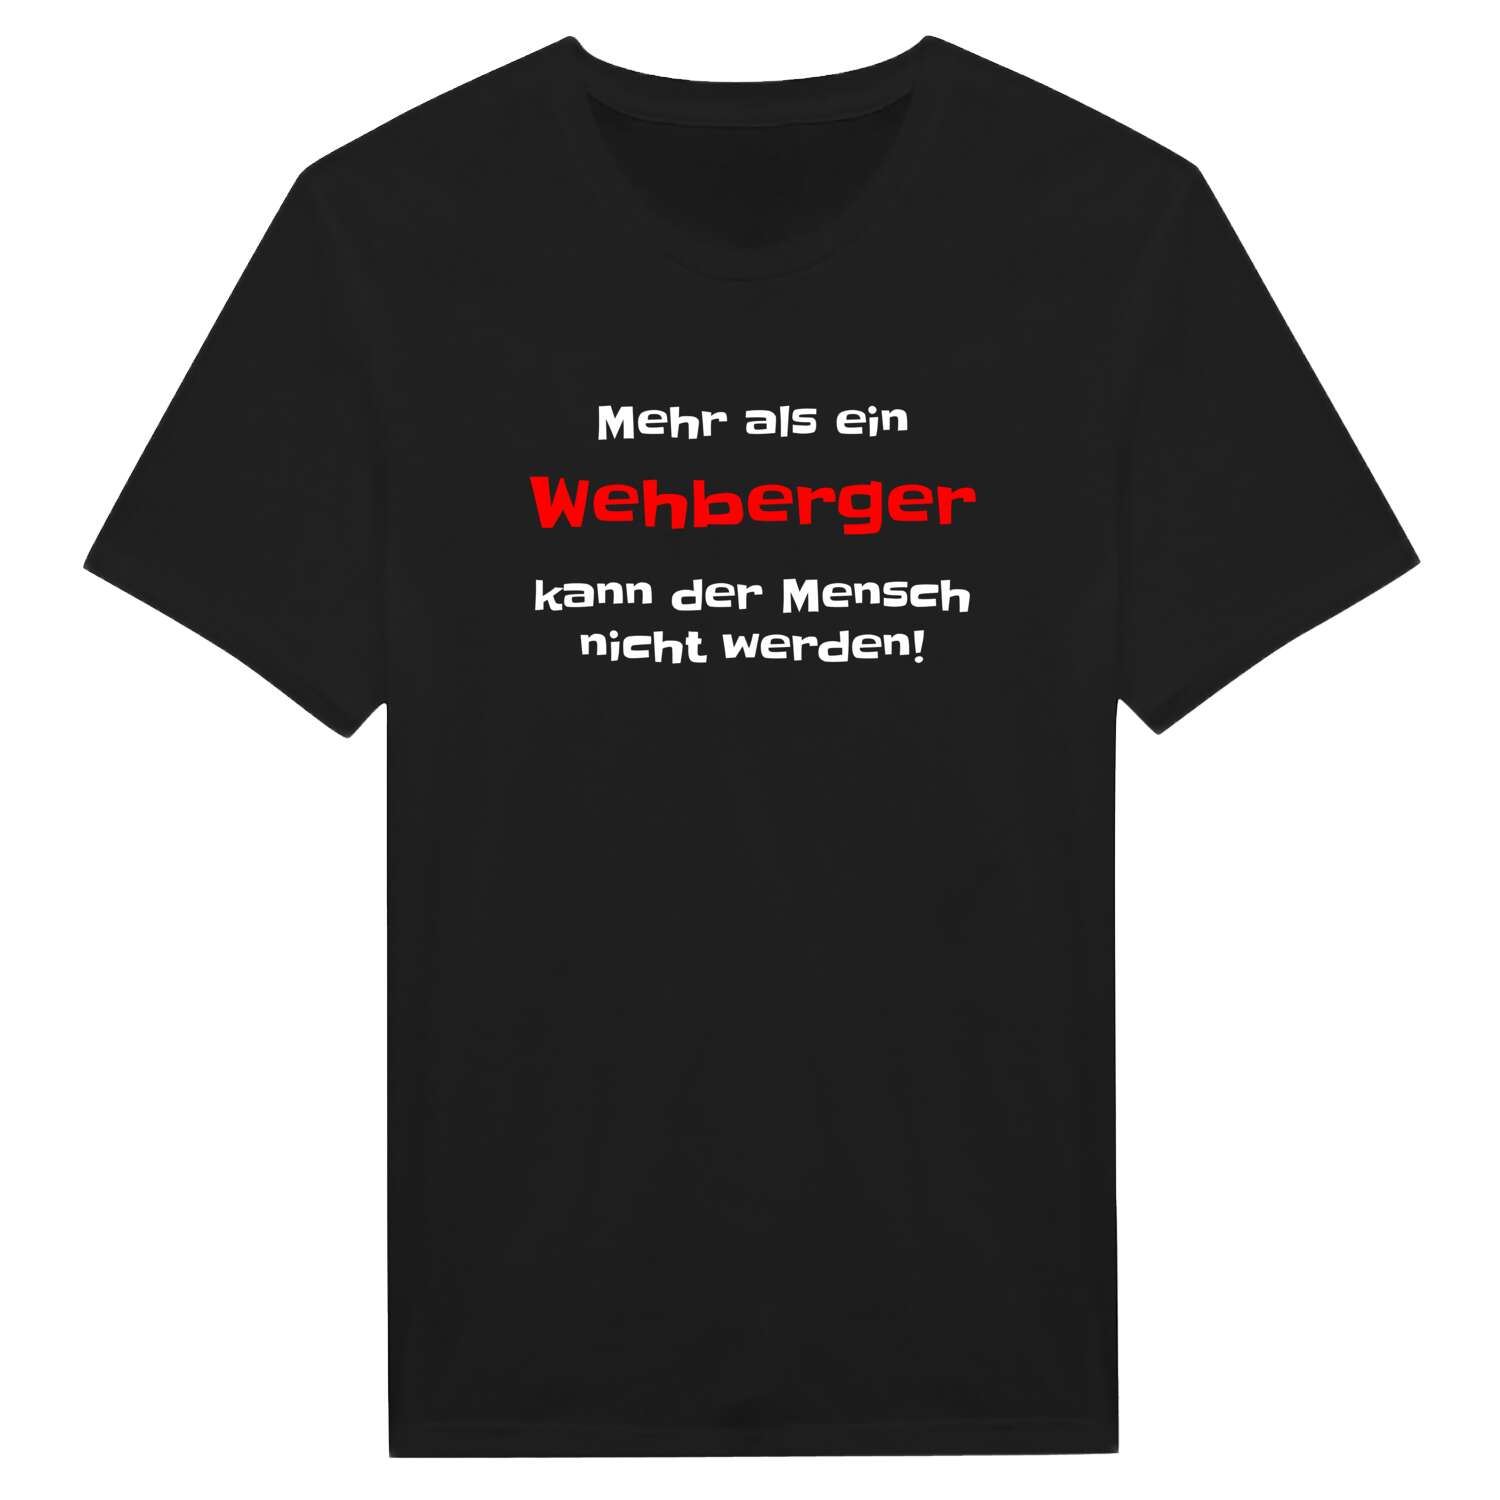 Wehberg T-Shirt »Mehr als ein«